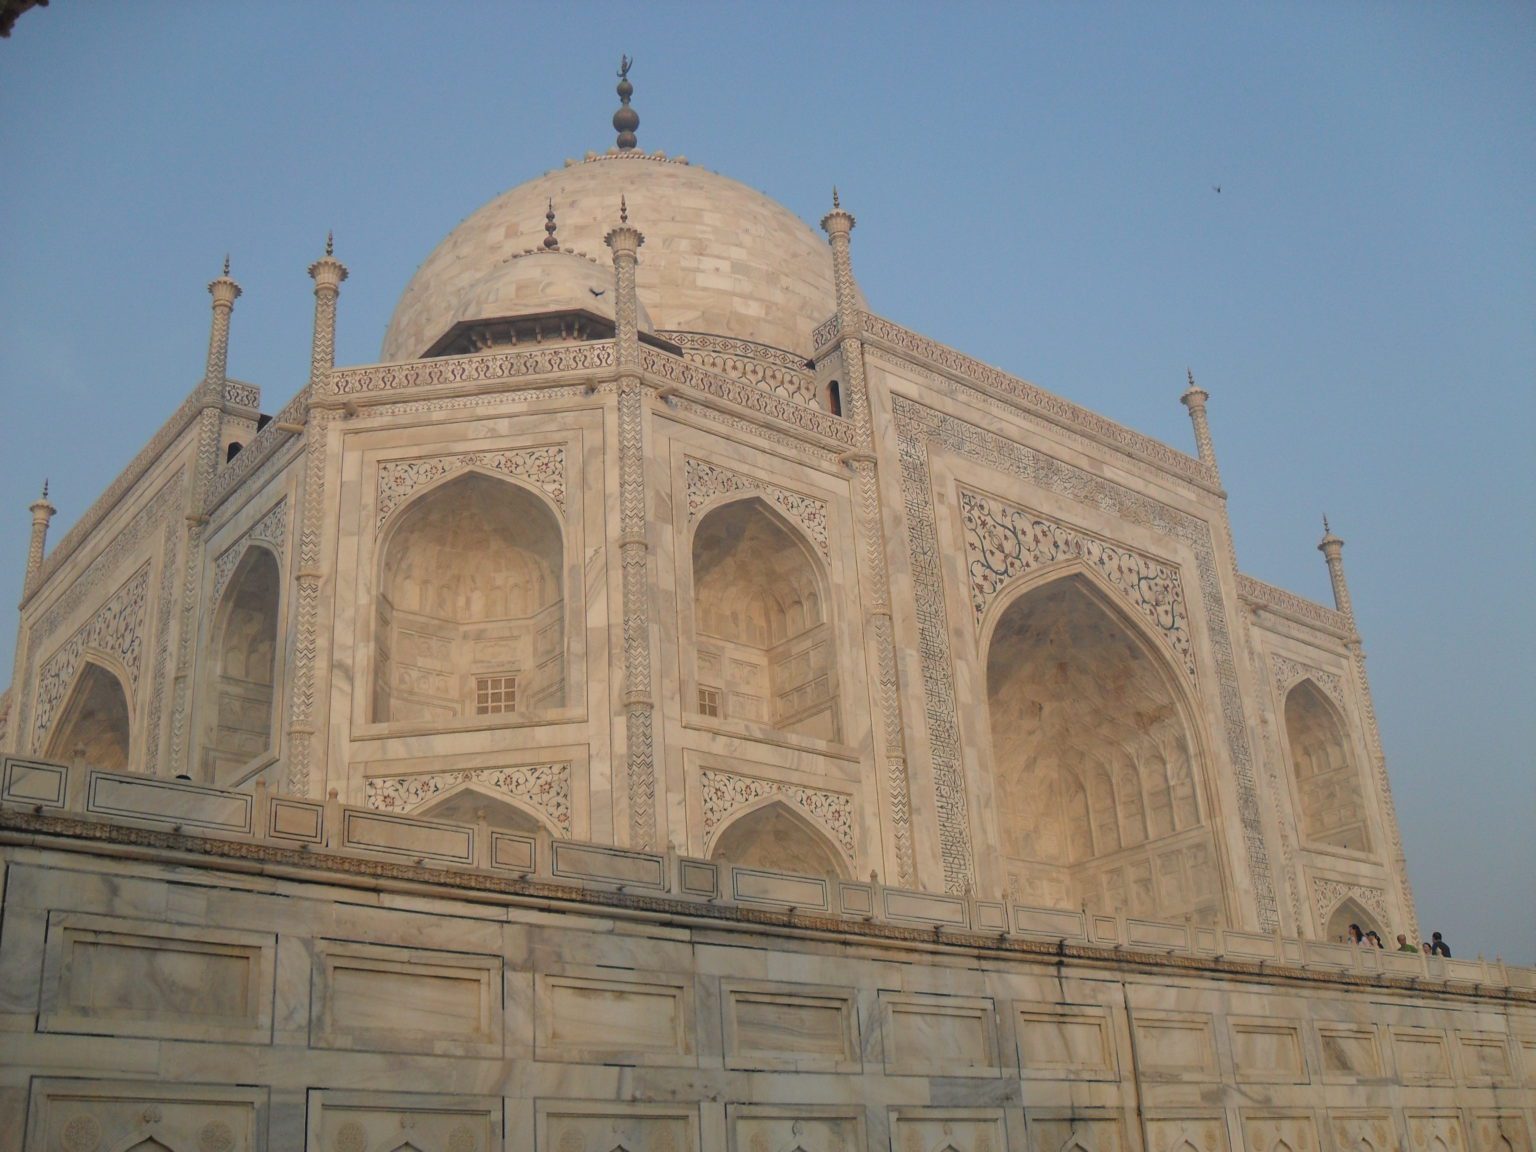 white marble of the Taj Mahal